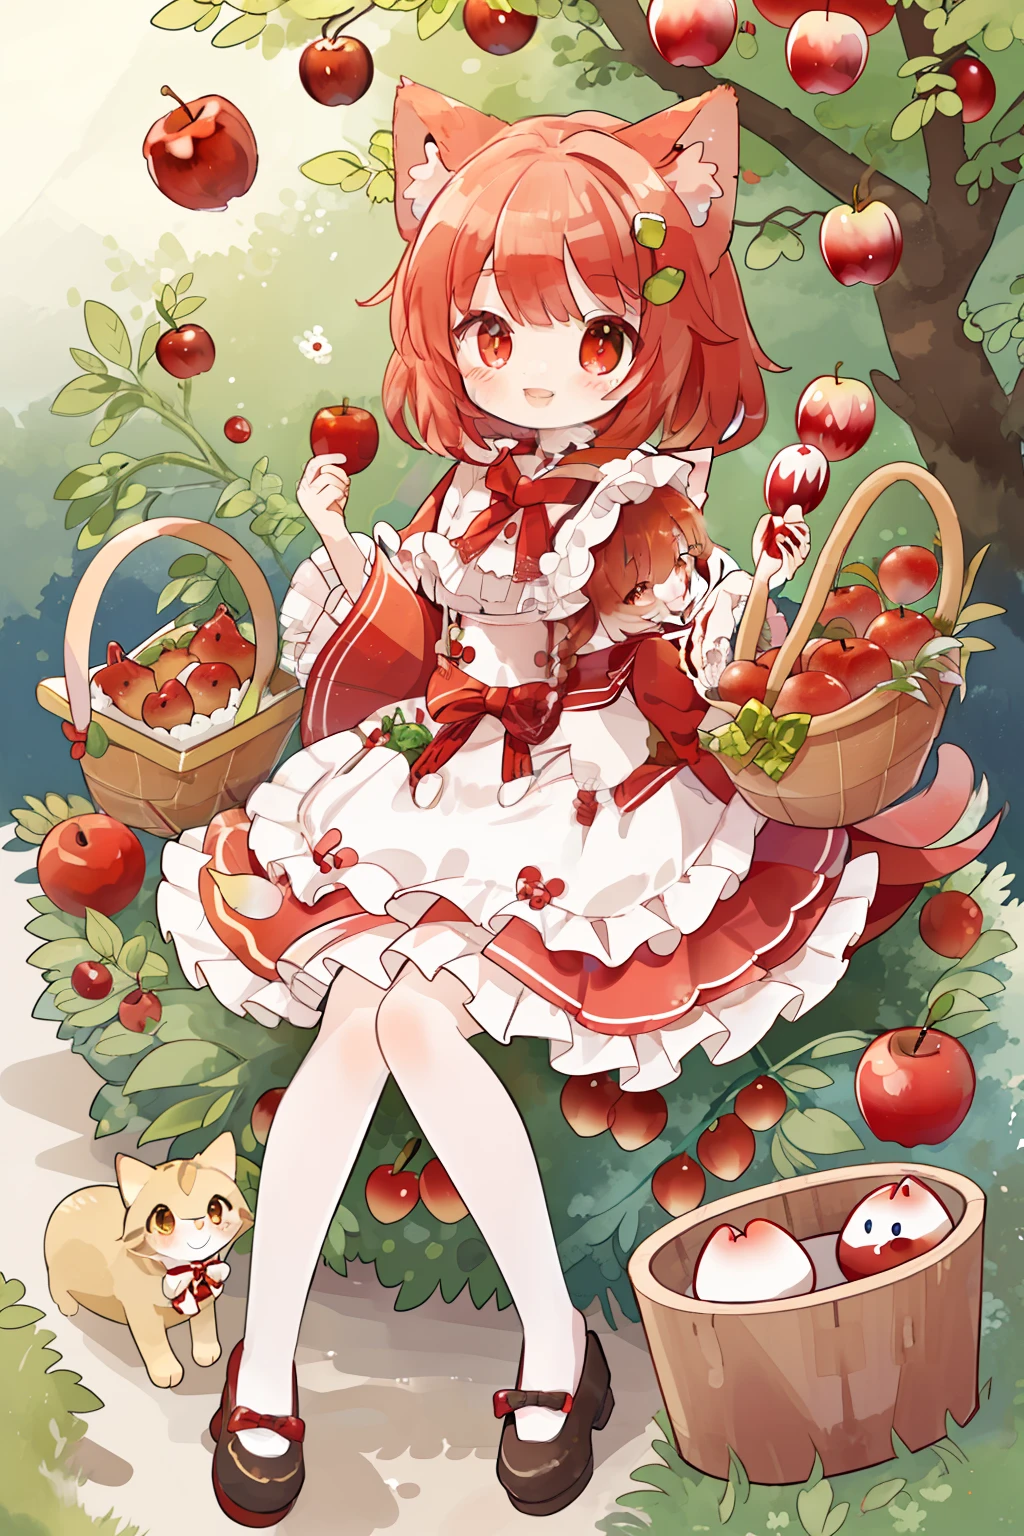 personaje gato、Caperucita Roja、en el bosque、2 cuerpo de cabeza、sonrisa sonriente、Cesta de manzanas、y almas、No_human